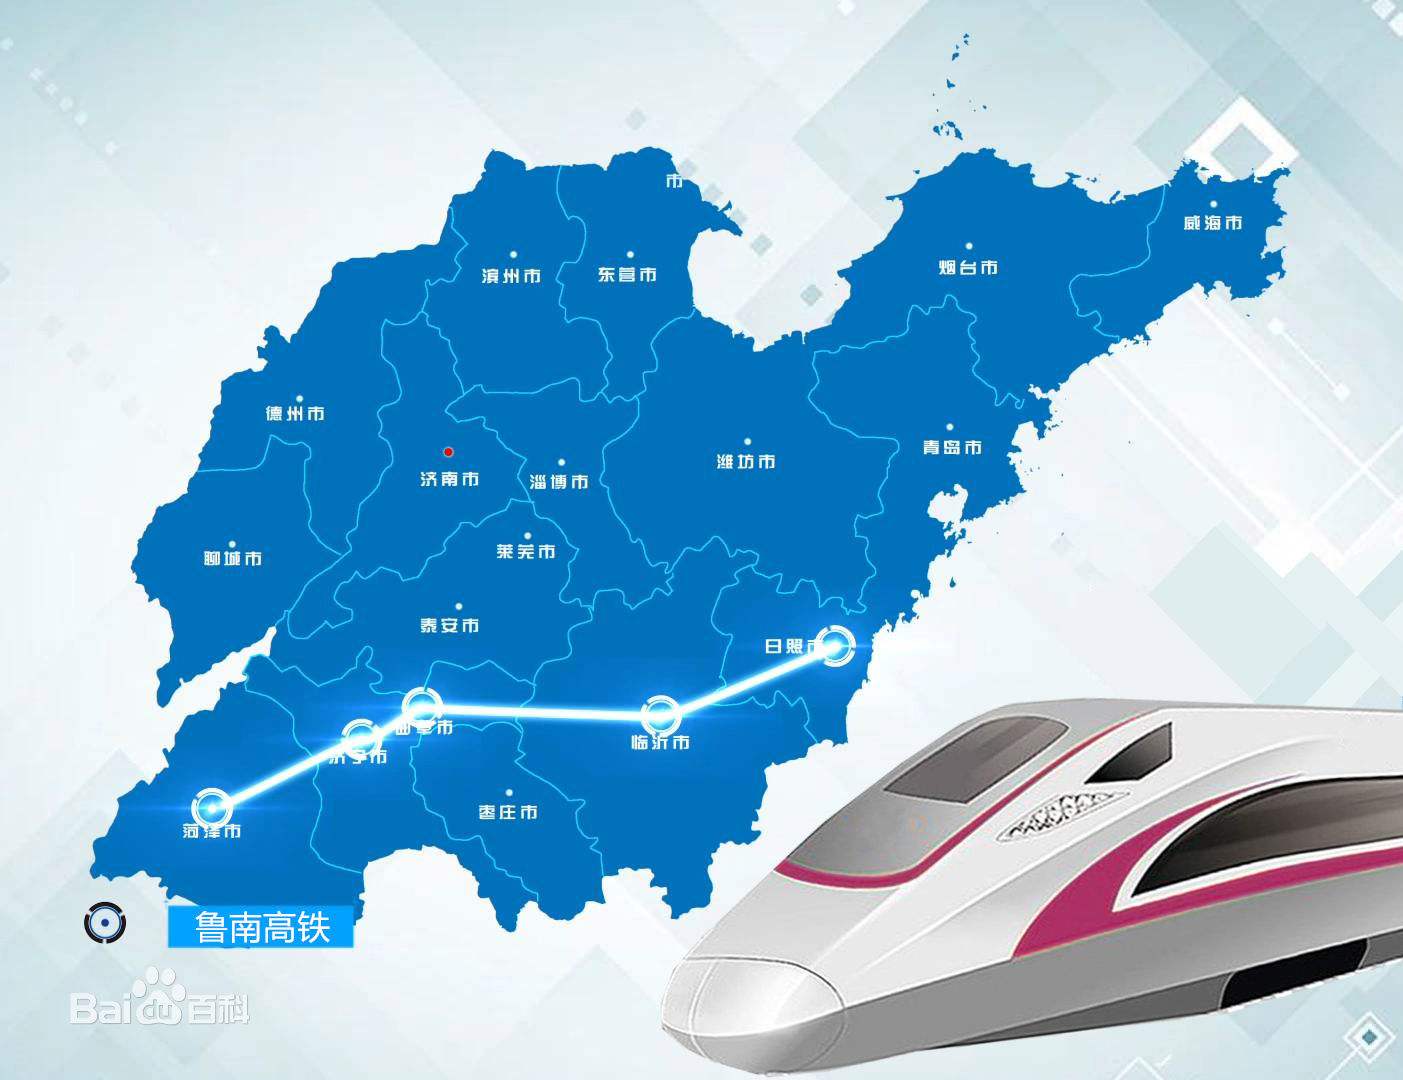 山东将迎来一条494公里的新高铁!贯穿大半个山东,途经你家吗?